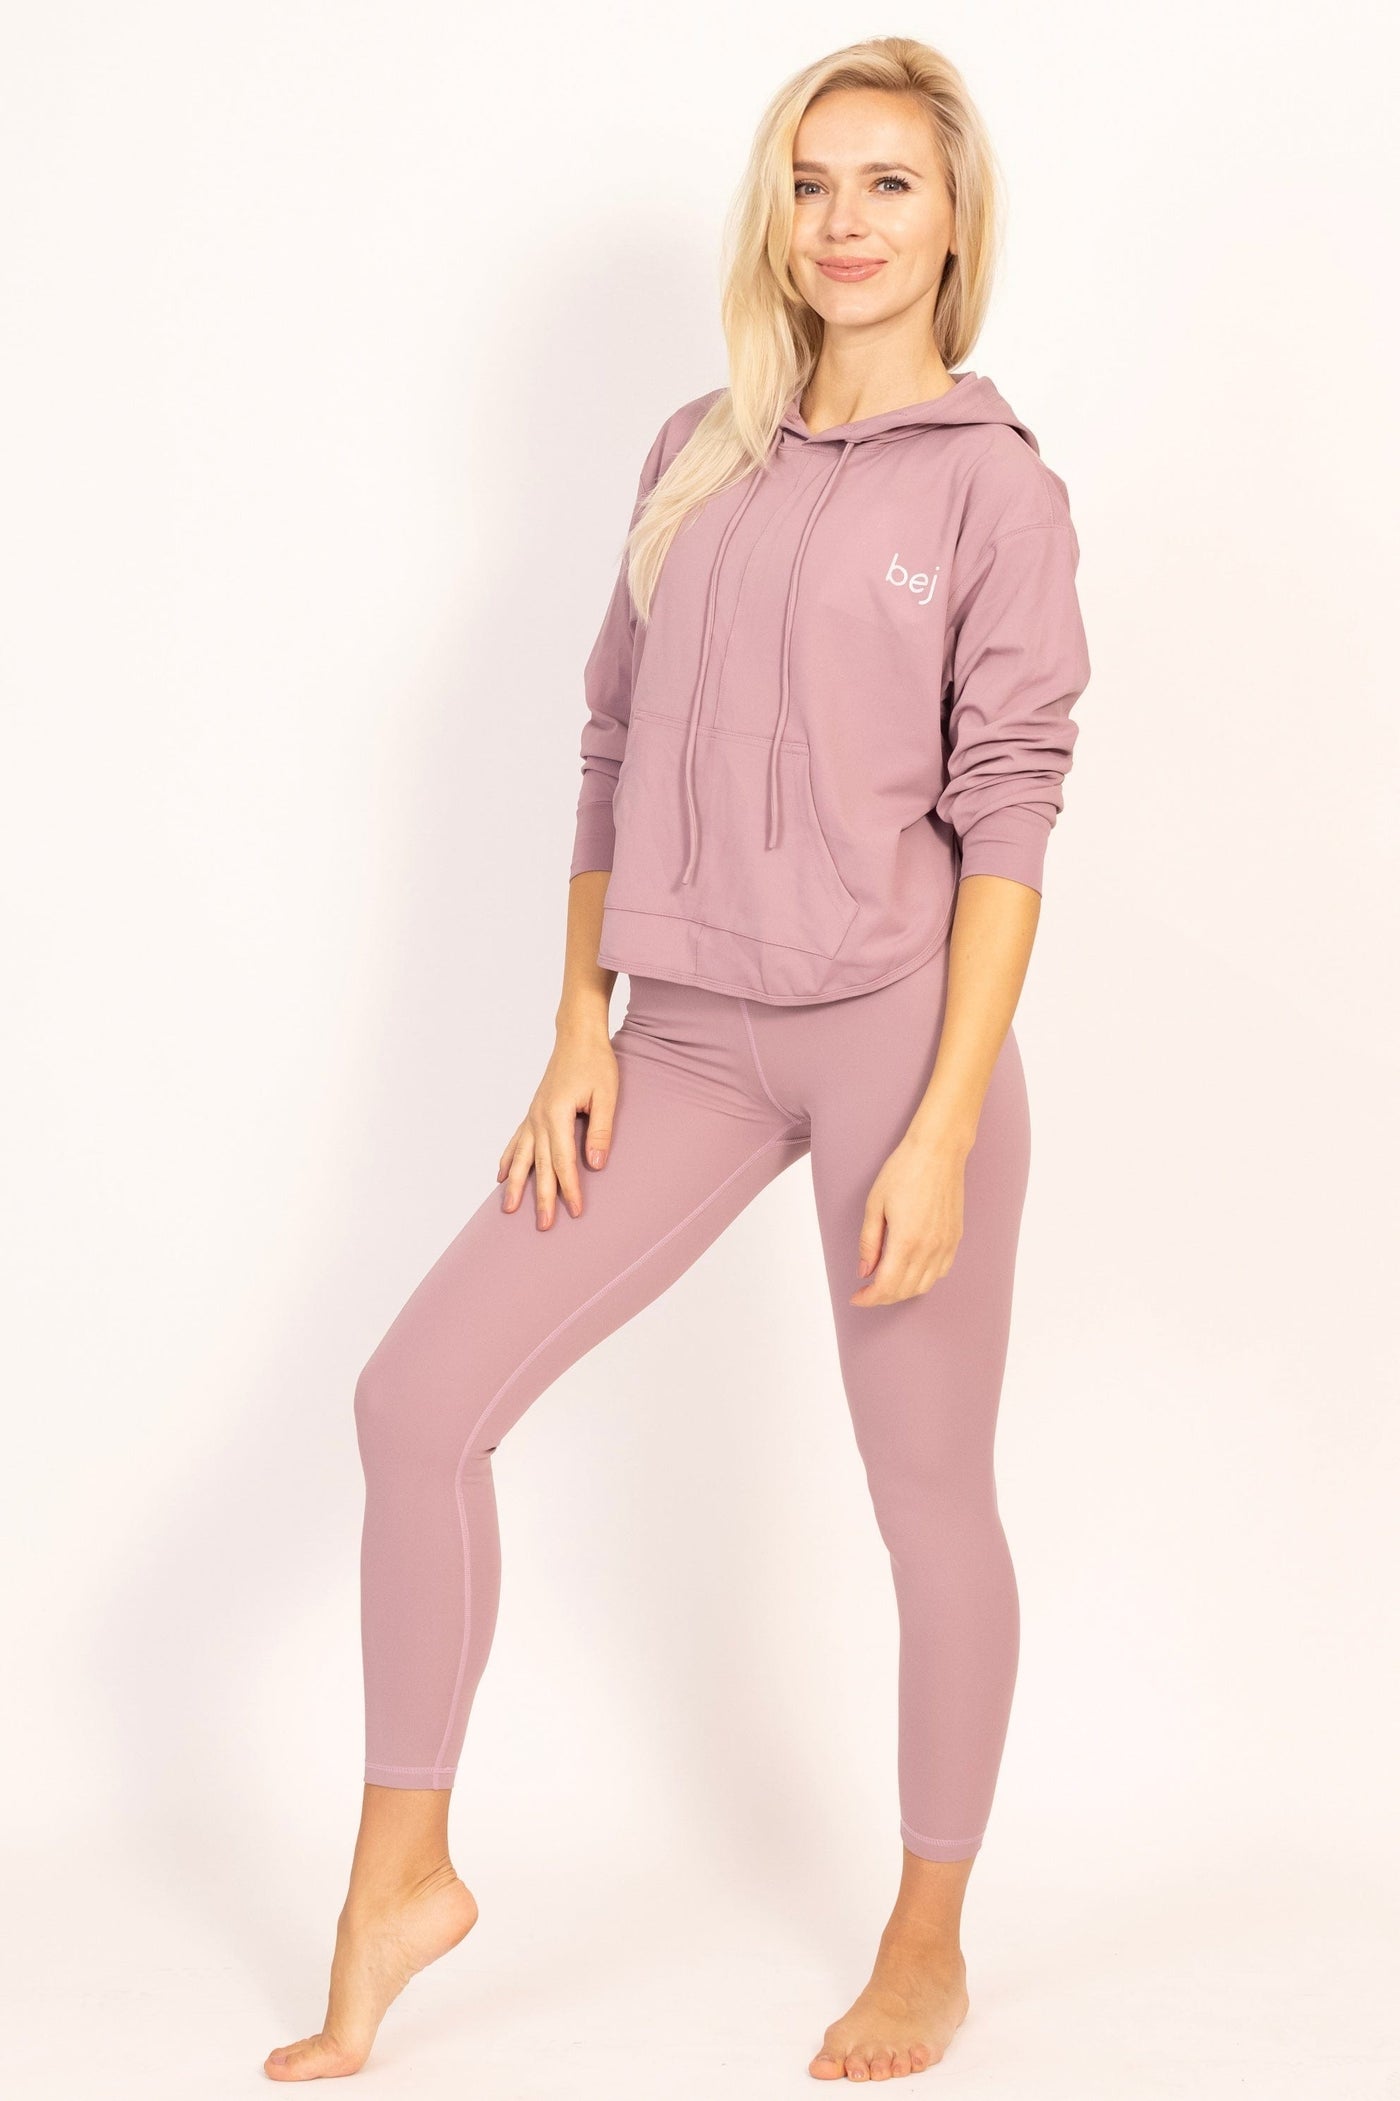 Venture Pink Legging - Shop women's workout apparel online | Leggings, hoodies, Top & bras | bejactive